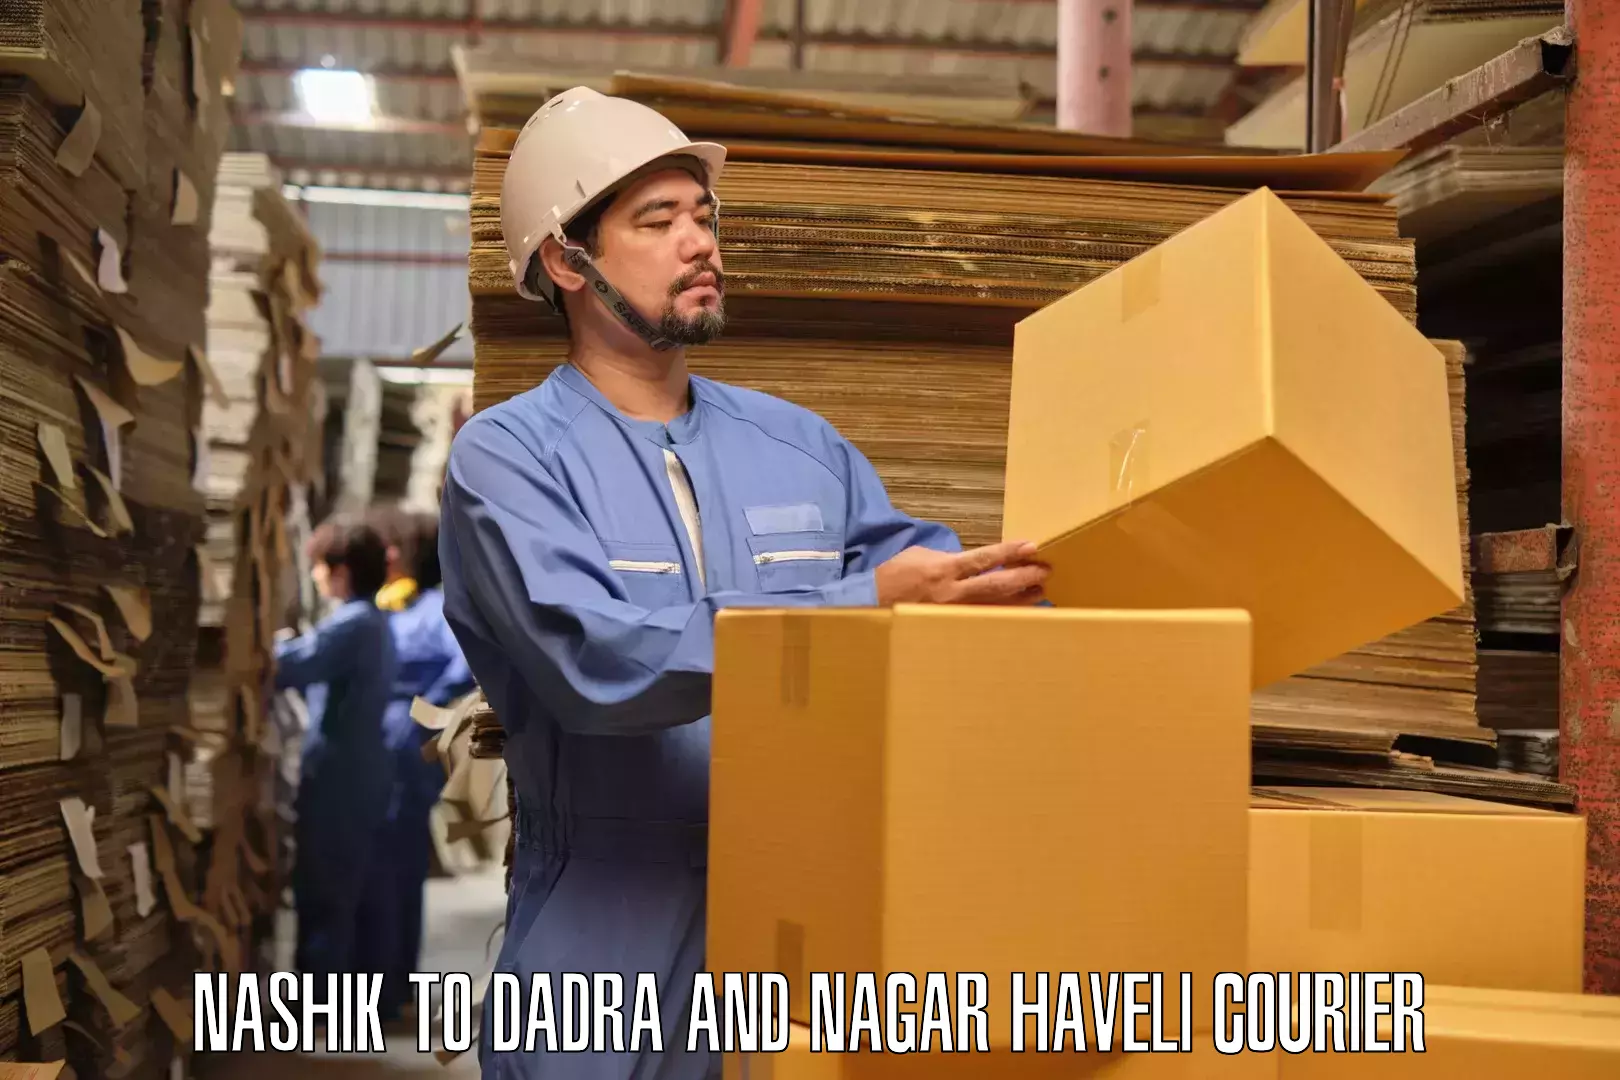 Professional movers Nashik to Dadra and Nagar Haveli